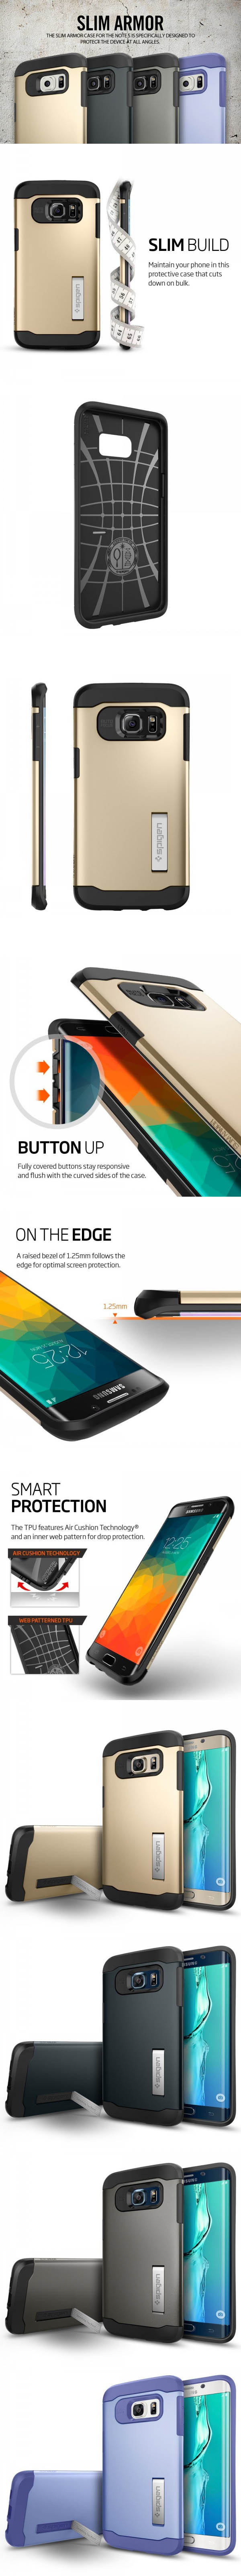 Ốp lưng Galaxy S6 Edge Plus SGP Slim Armor 2 lớp chống sốc từ Mỹ - 6